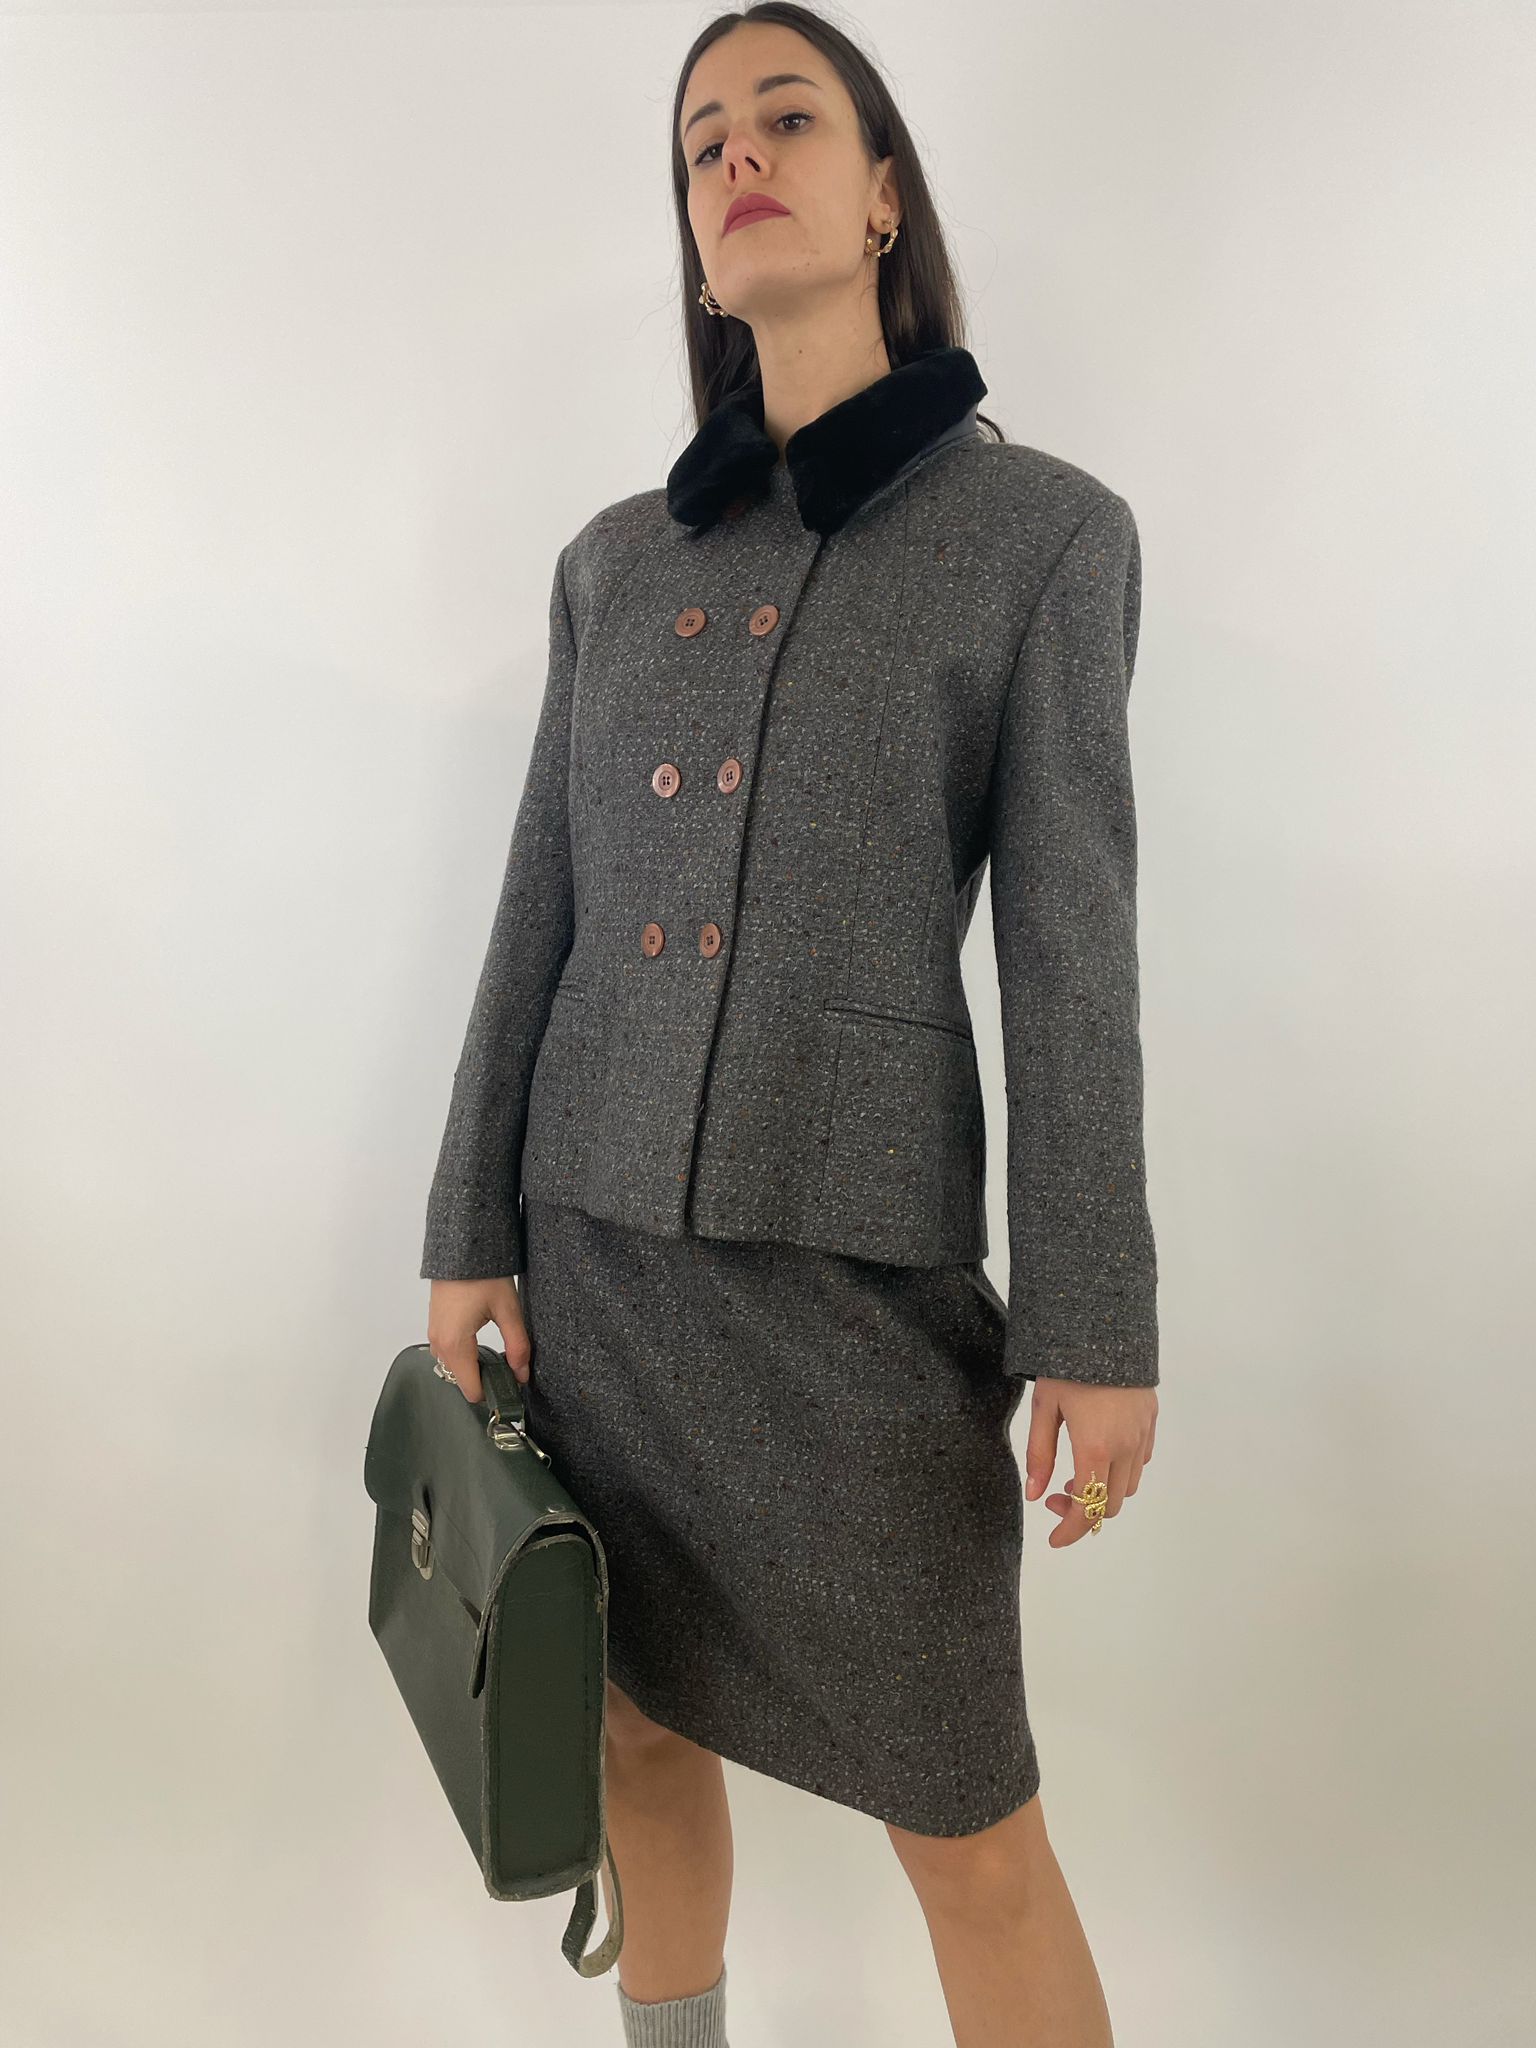 tailleur-anni-90-in-lana-colore-grigio-giacca-doppiopetto